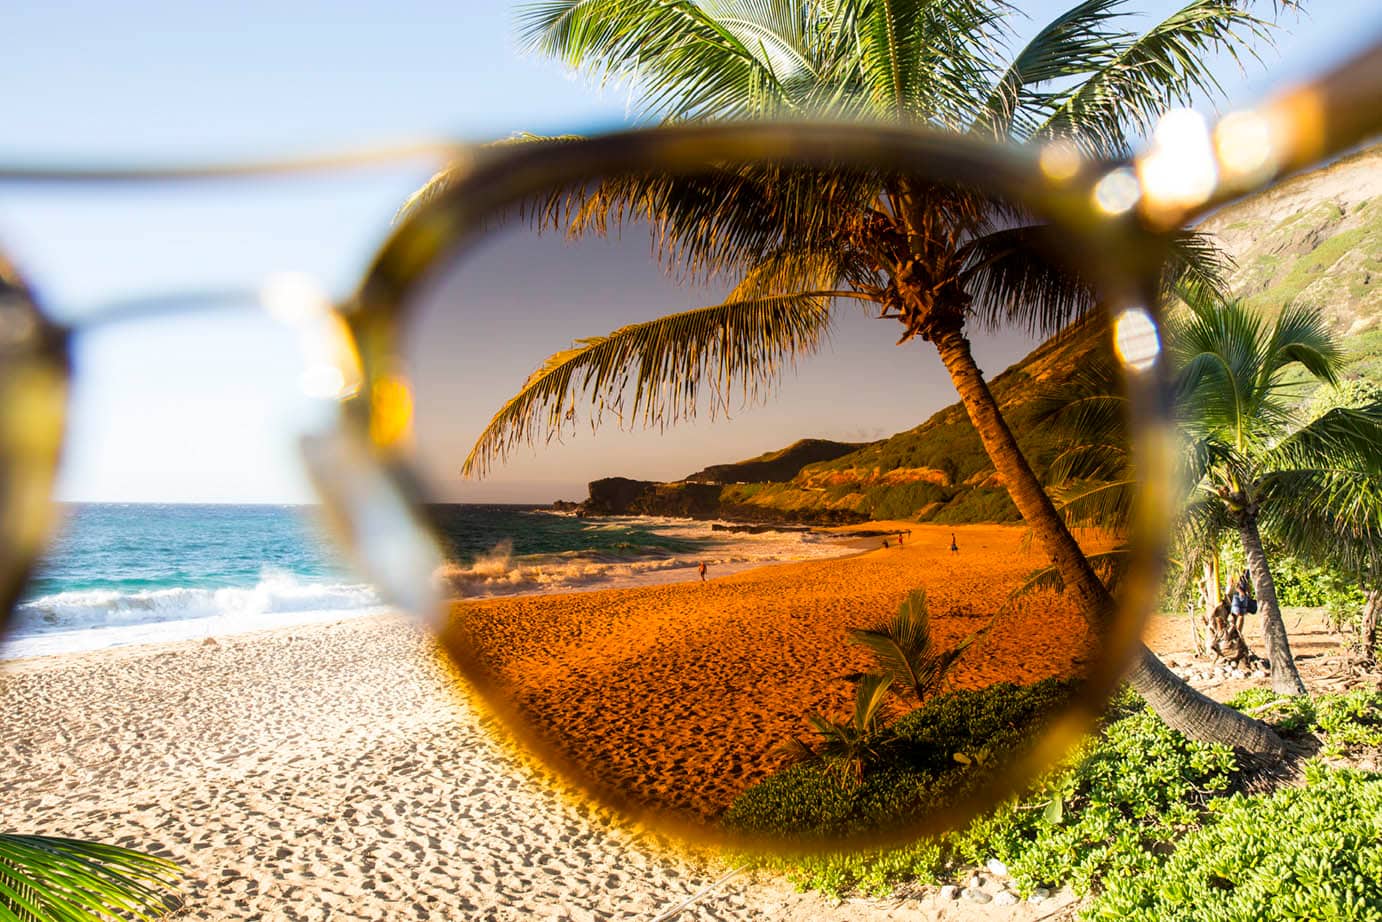 A view thru Maui-Jim sunglasses lenses